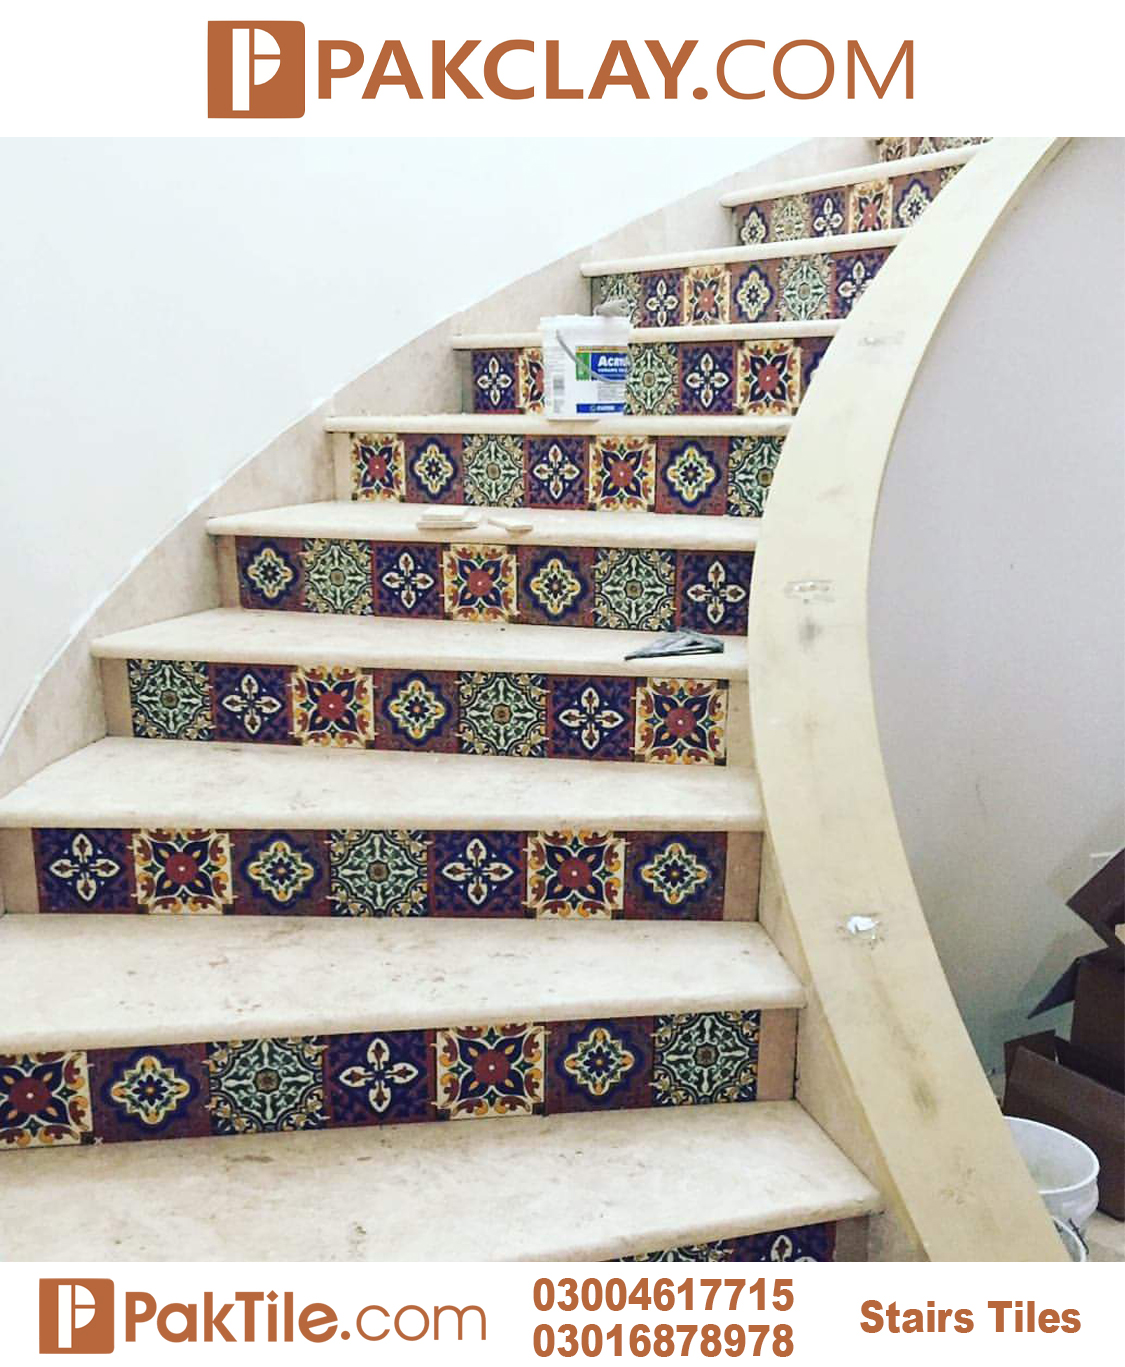 7 Pak Clay Outdoor Staircase Tiles Design in Karachi